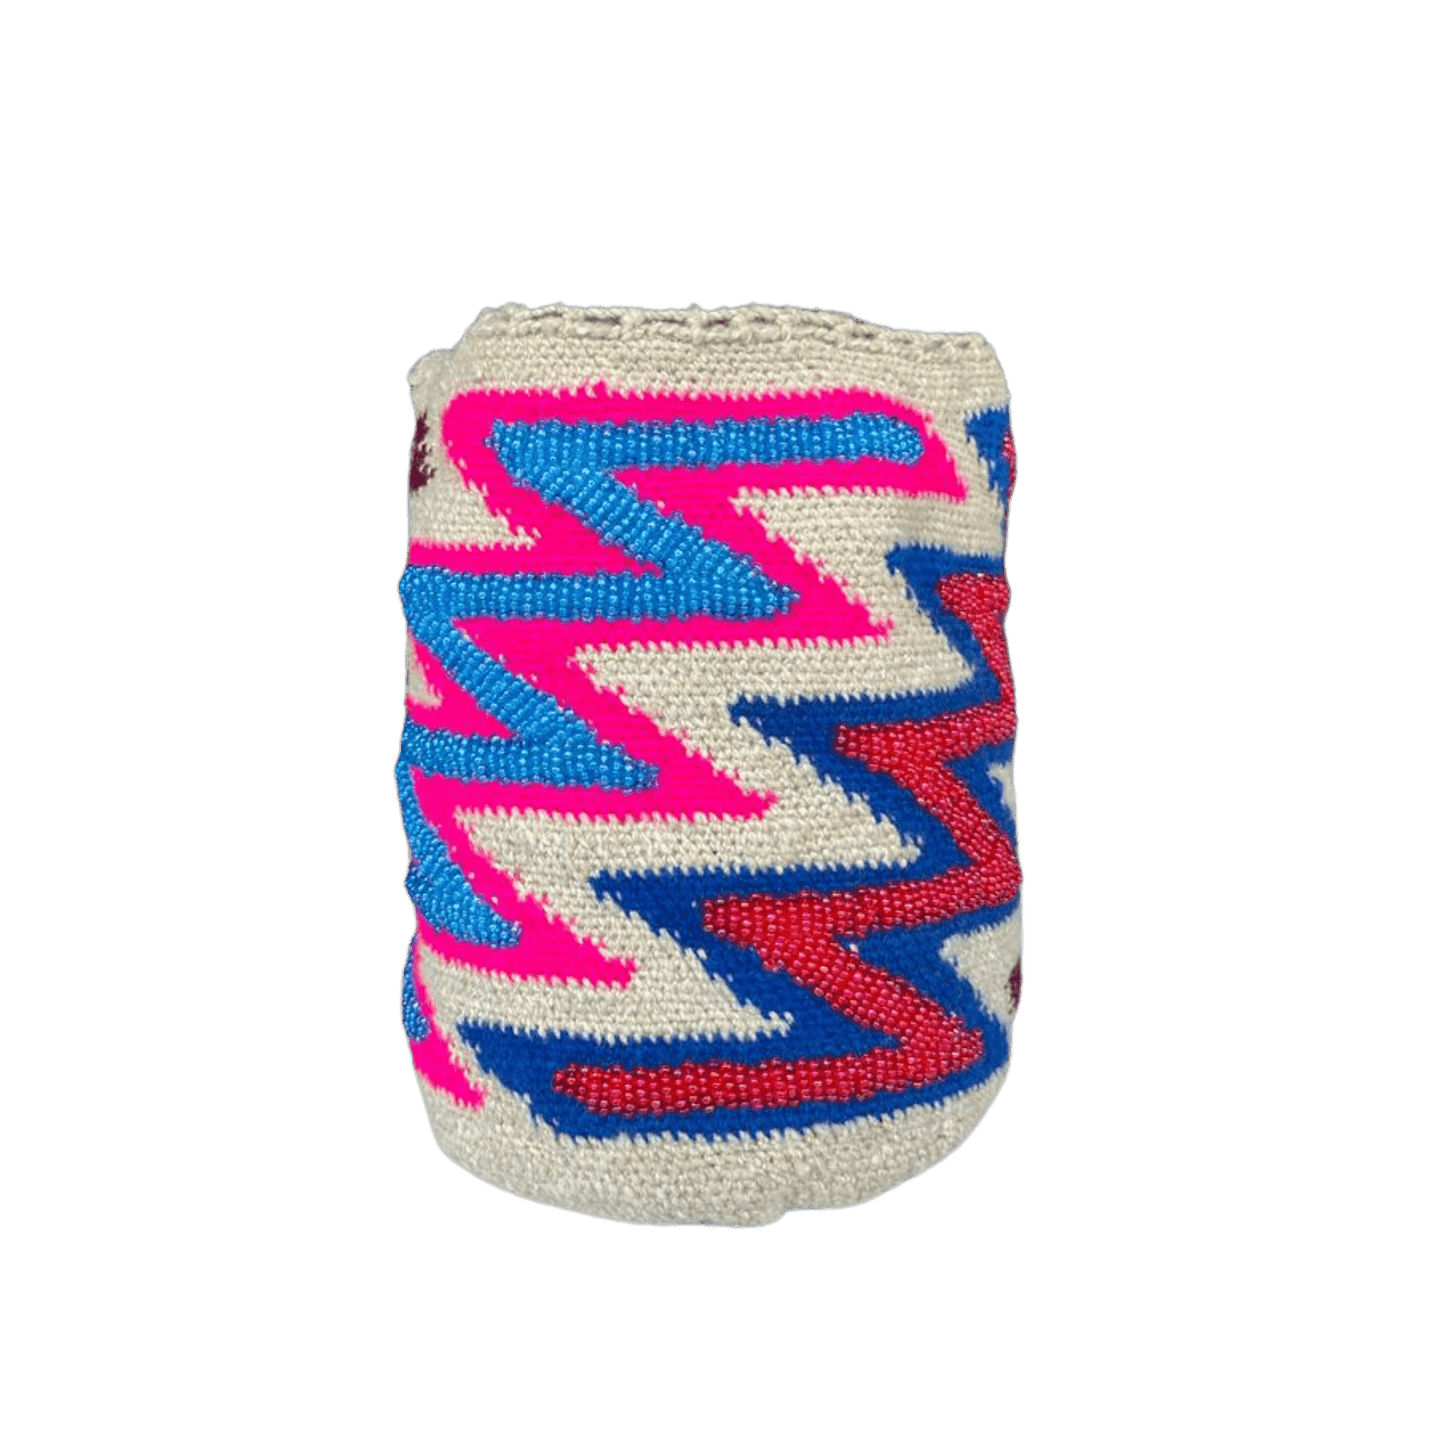 mochila kankuama diseño en zigzag decorada con mostacillas de colores